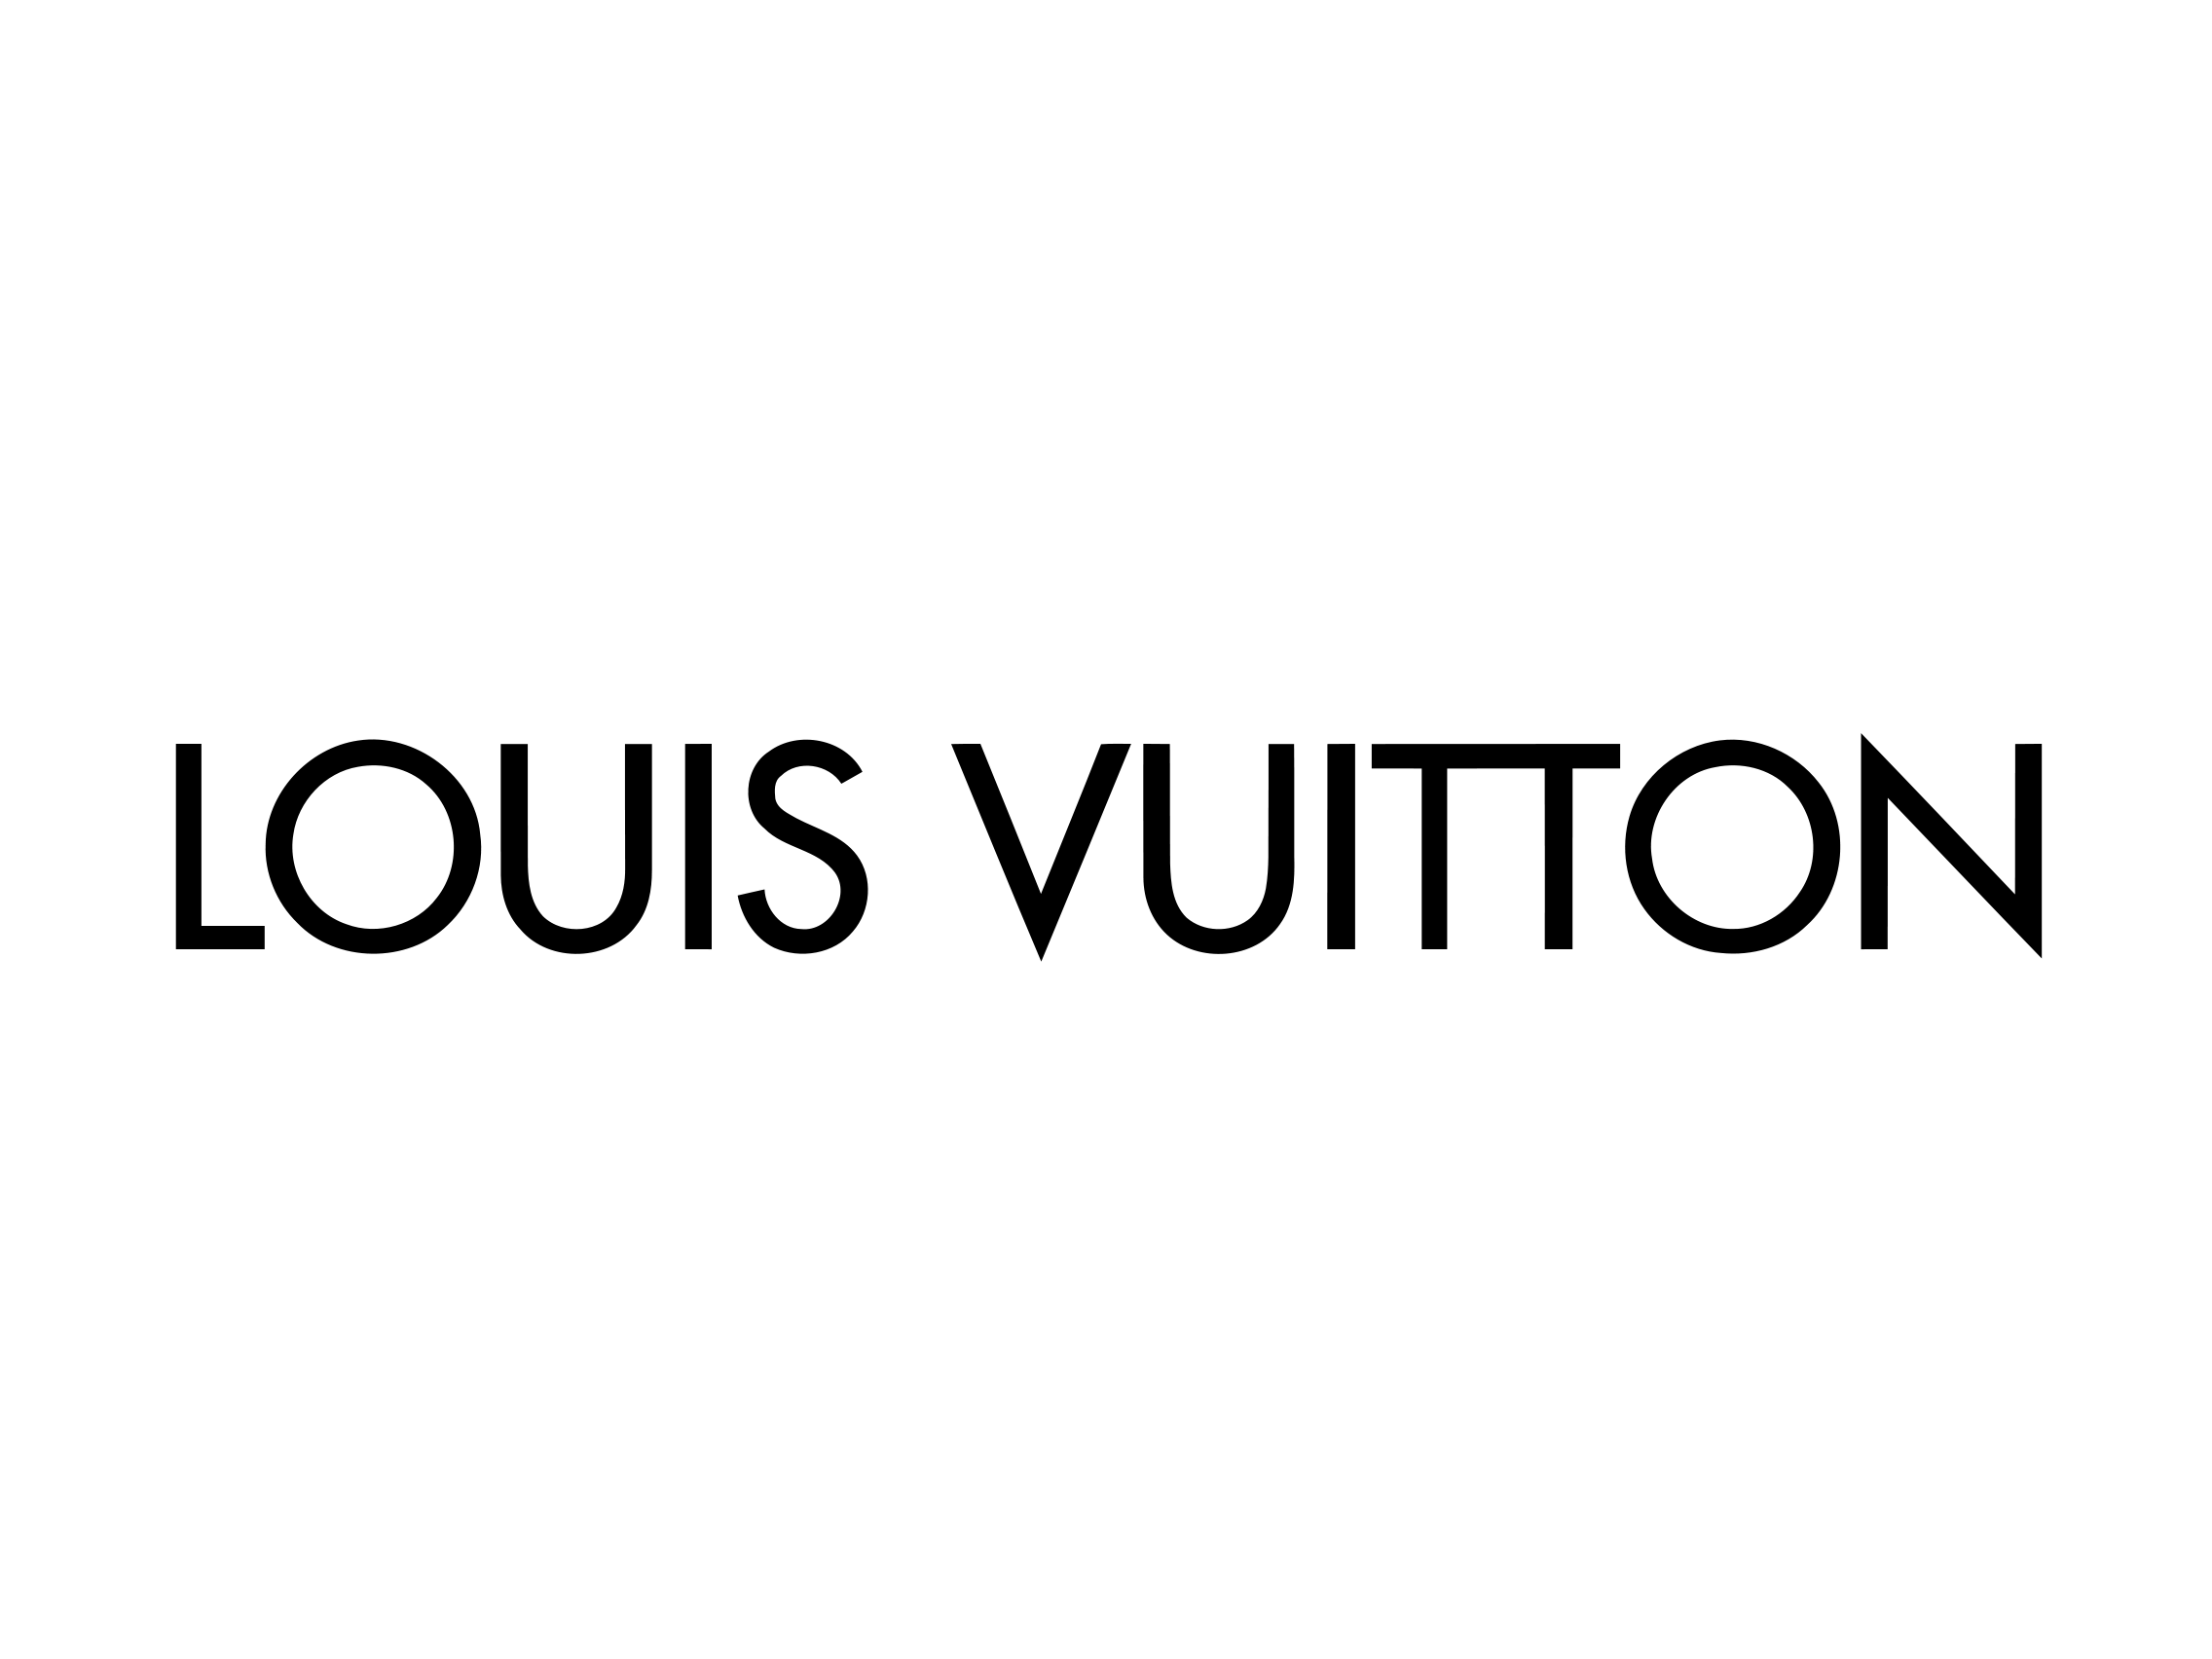 Vuitton Logo - Louis Vuitton Logo - Logok